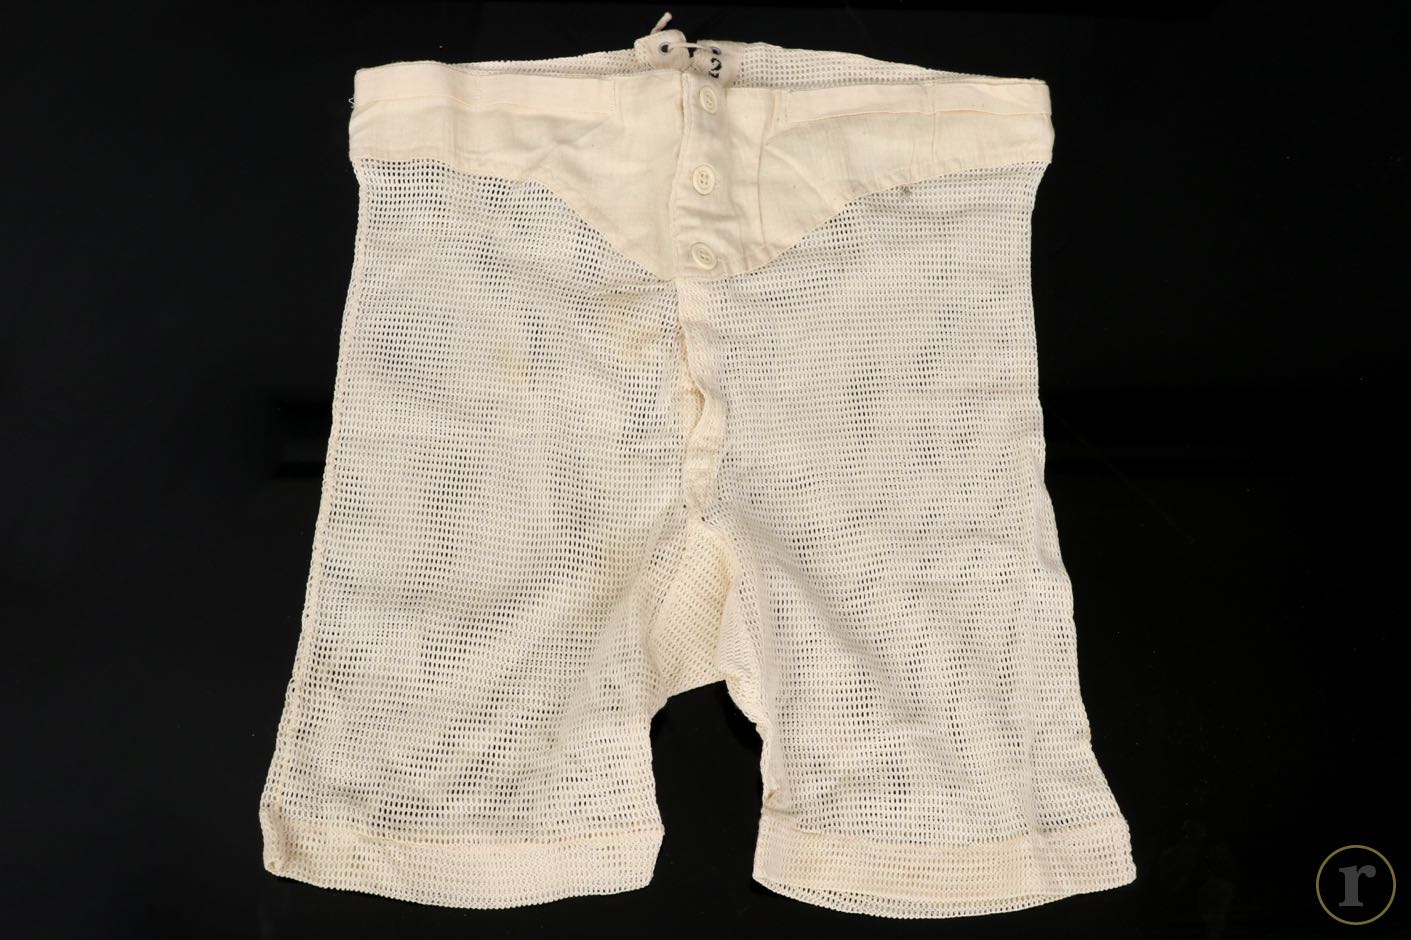 ratisbon's | Wehrmacht tropical underwear - unissued | DISCOVER GENUINE ...